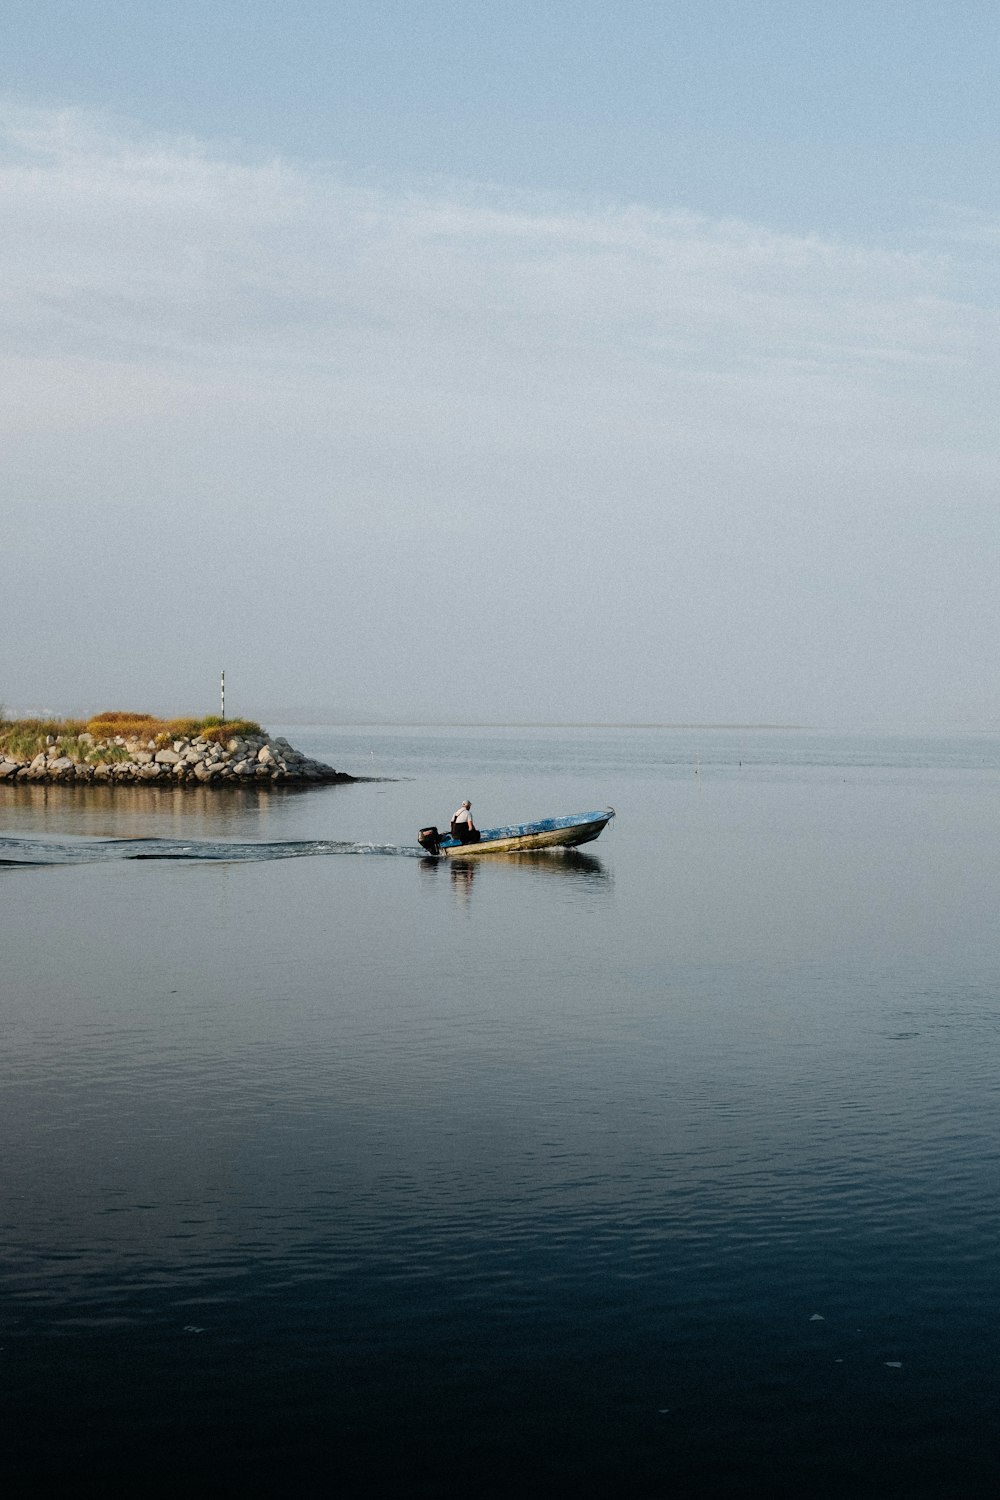 man in blue kayak on sea during daytime